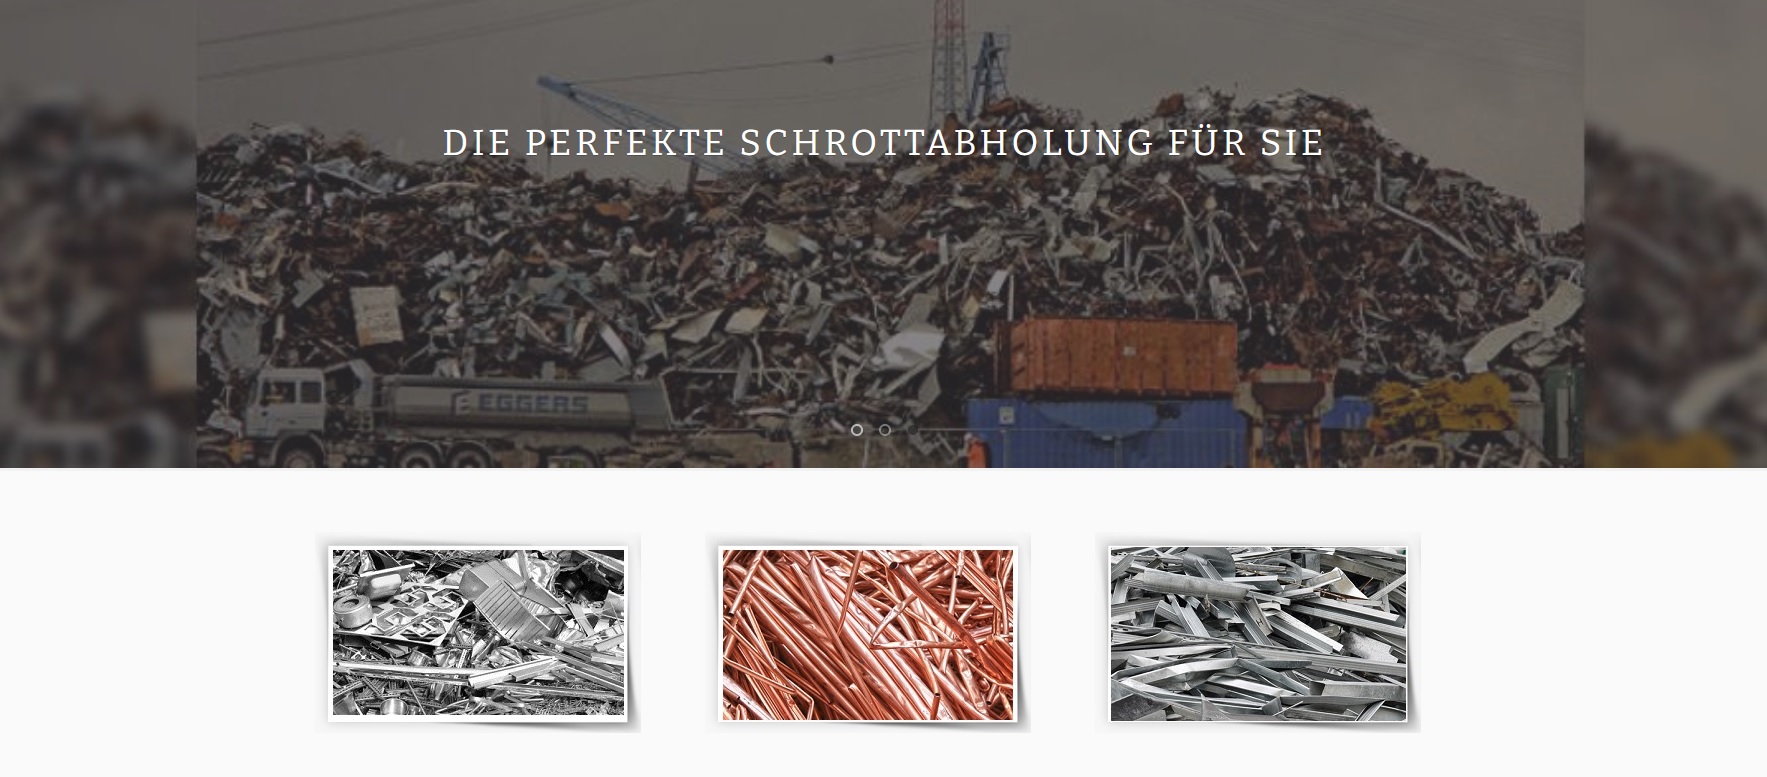 Schrottabholen in Wuppertal: Unser Service, Ihre Umwelt – Kostenlos und Zuverlässig